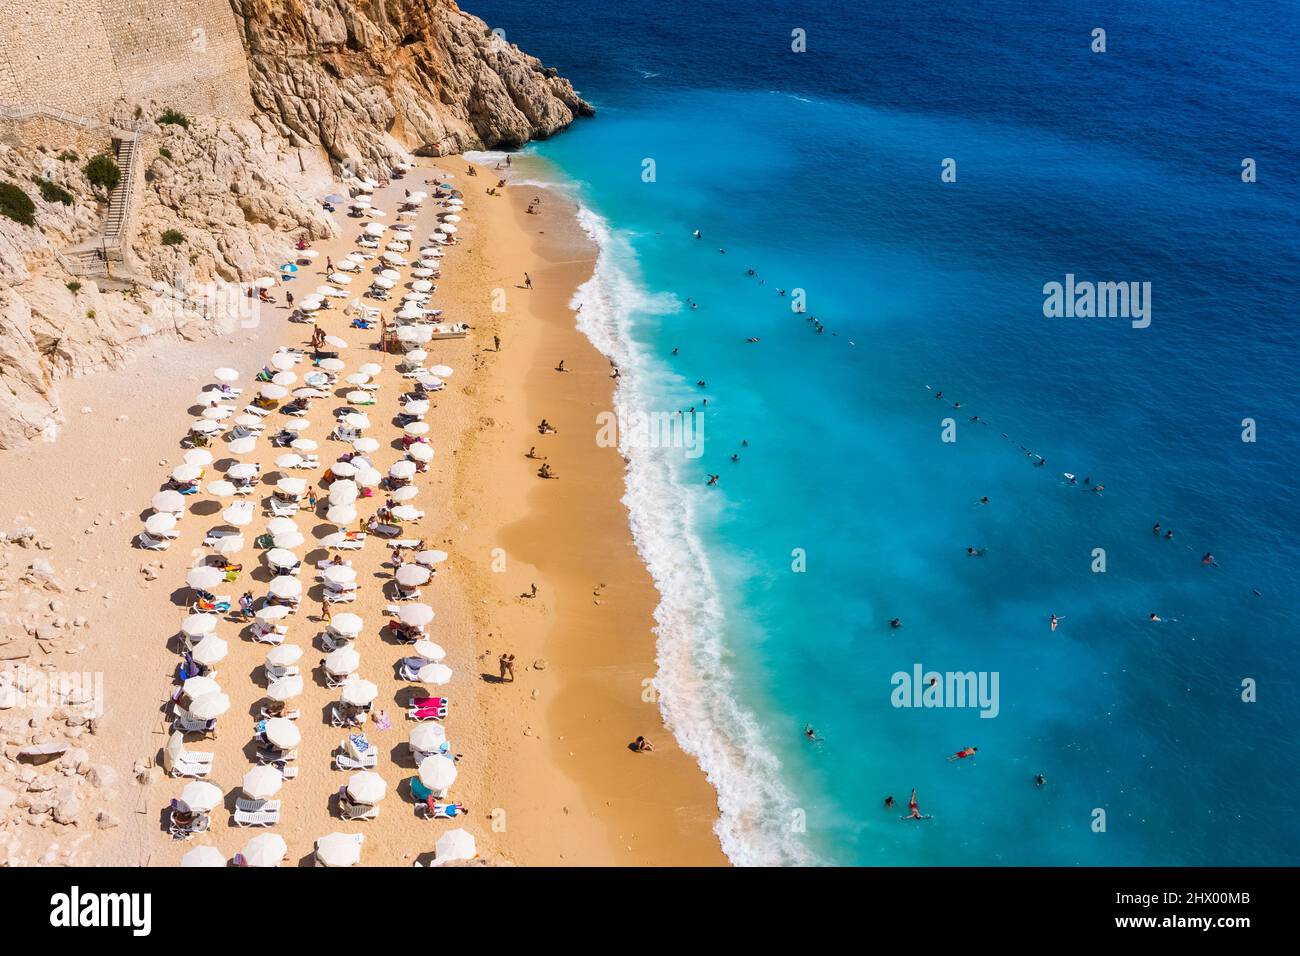 Vue aérienne de la plage de Kaputas à Kas. Kalkan, Antalya, Turquie. Méthode Lycienne. Concept été et vacances Banque D'Images